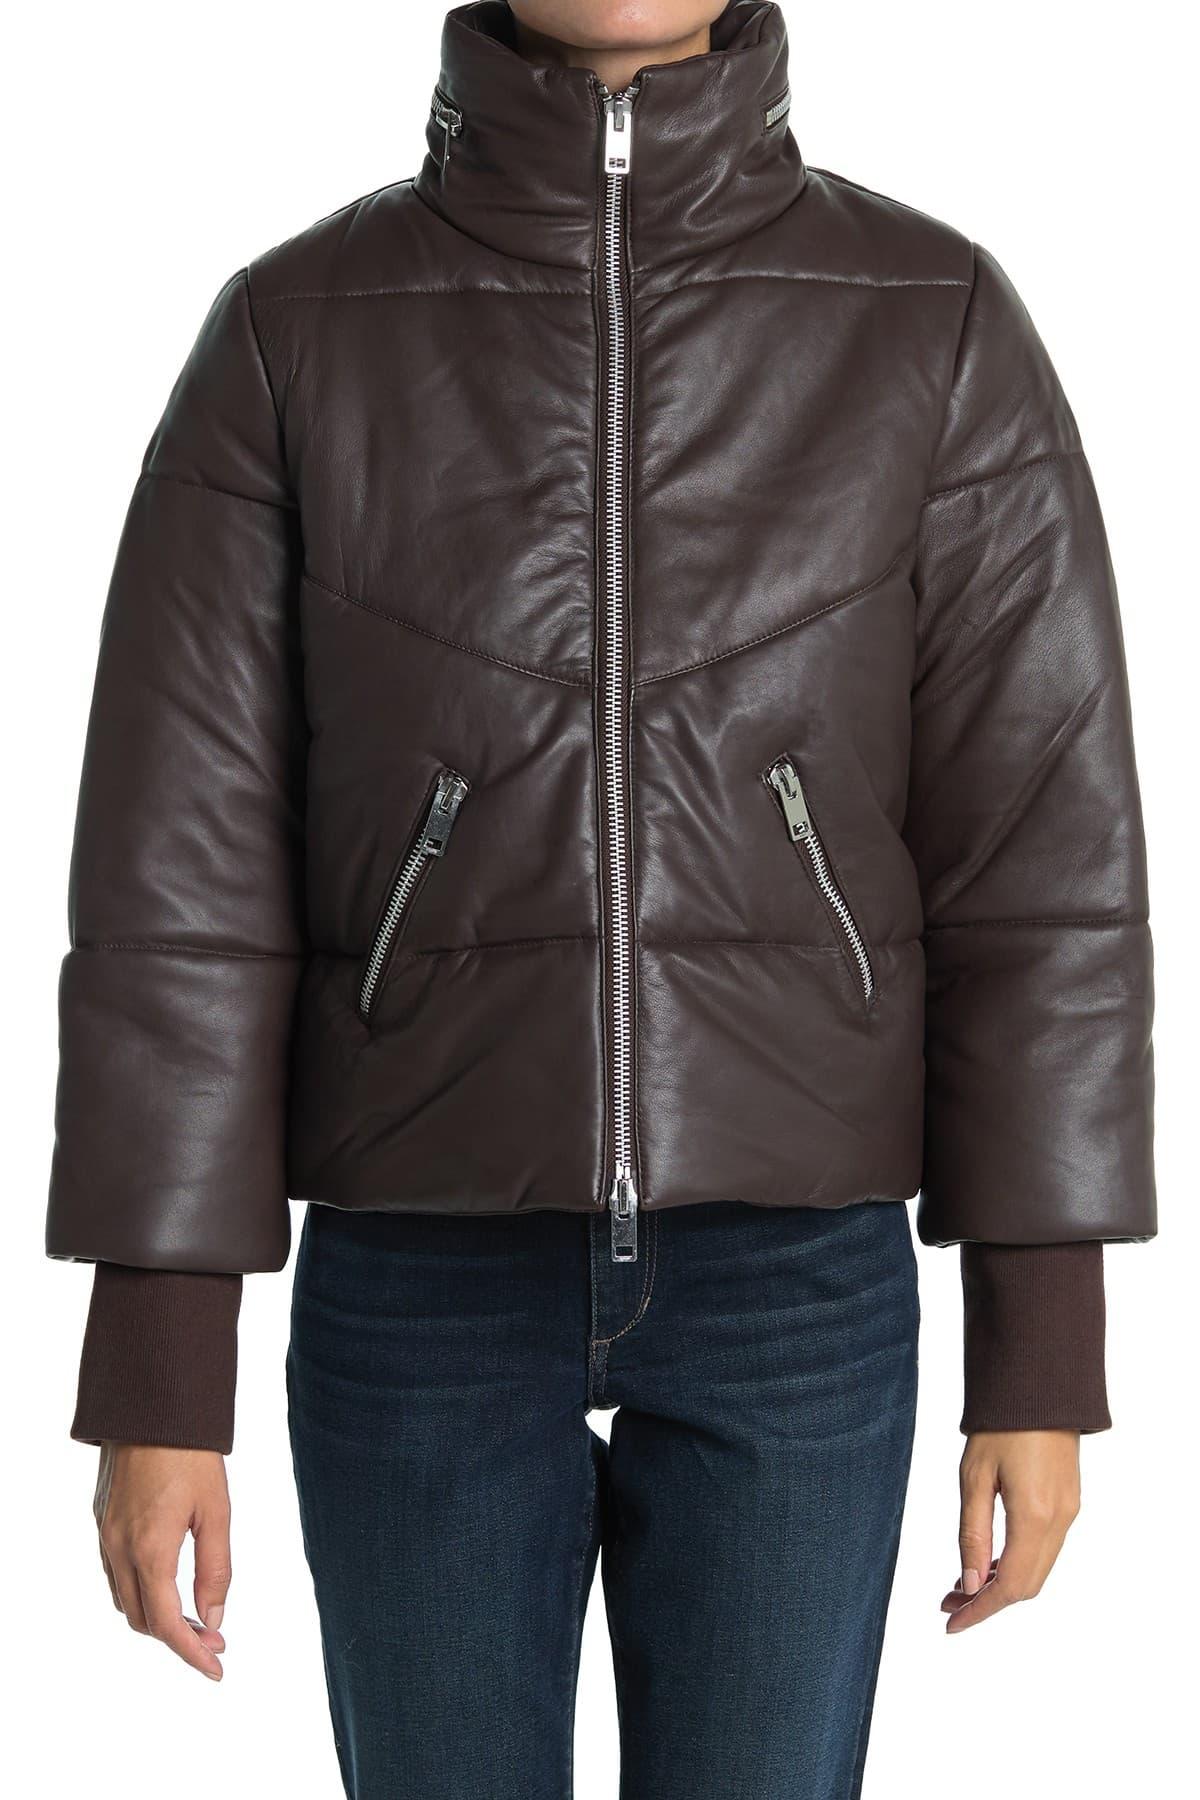 Walter Baker Edwina Leather Puffer Jacket in Brown | Lyst